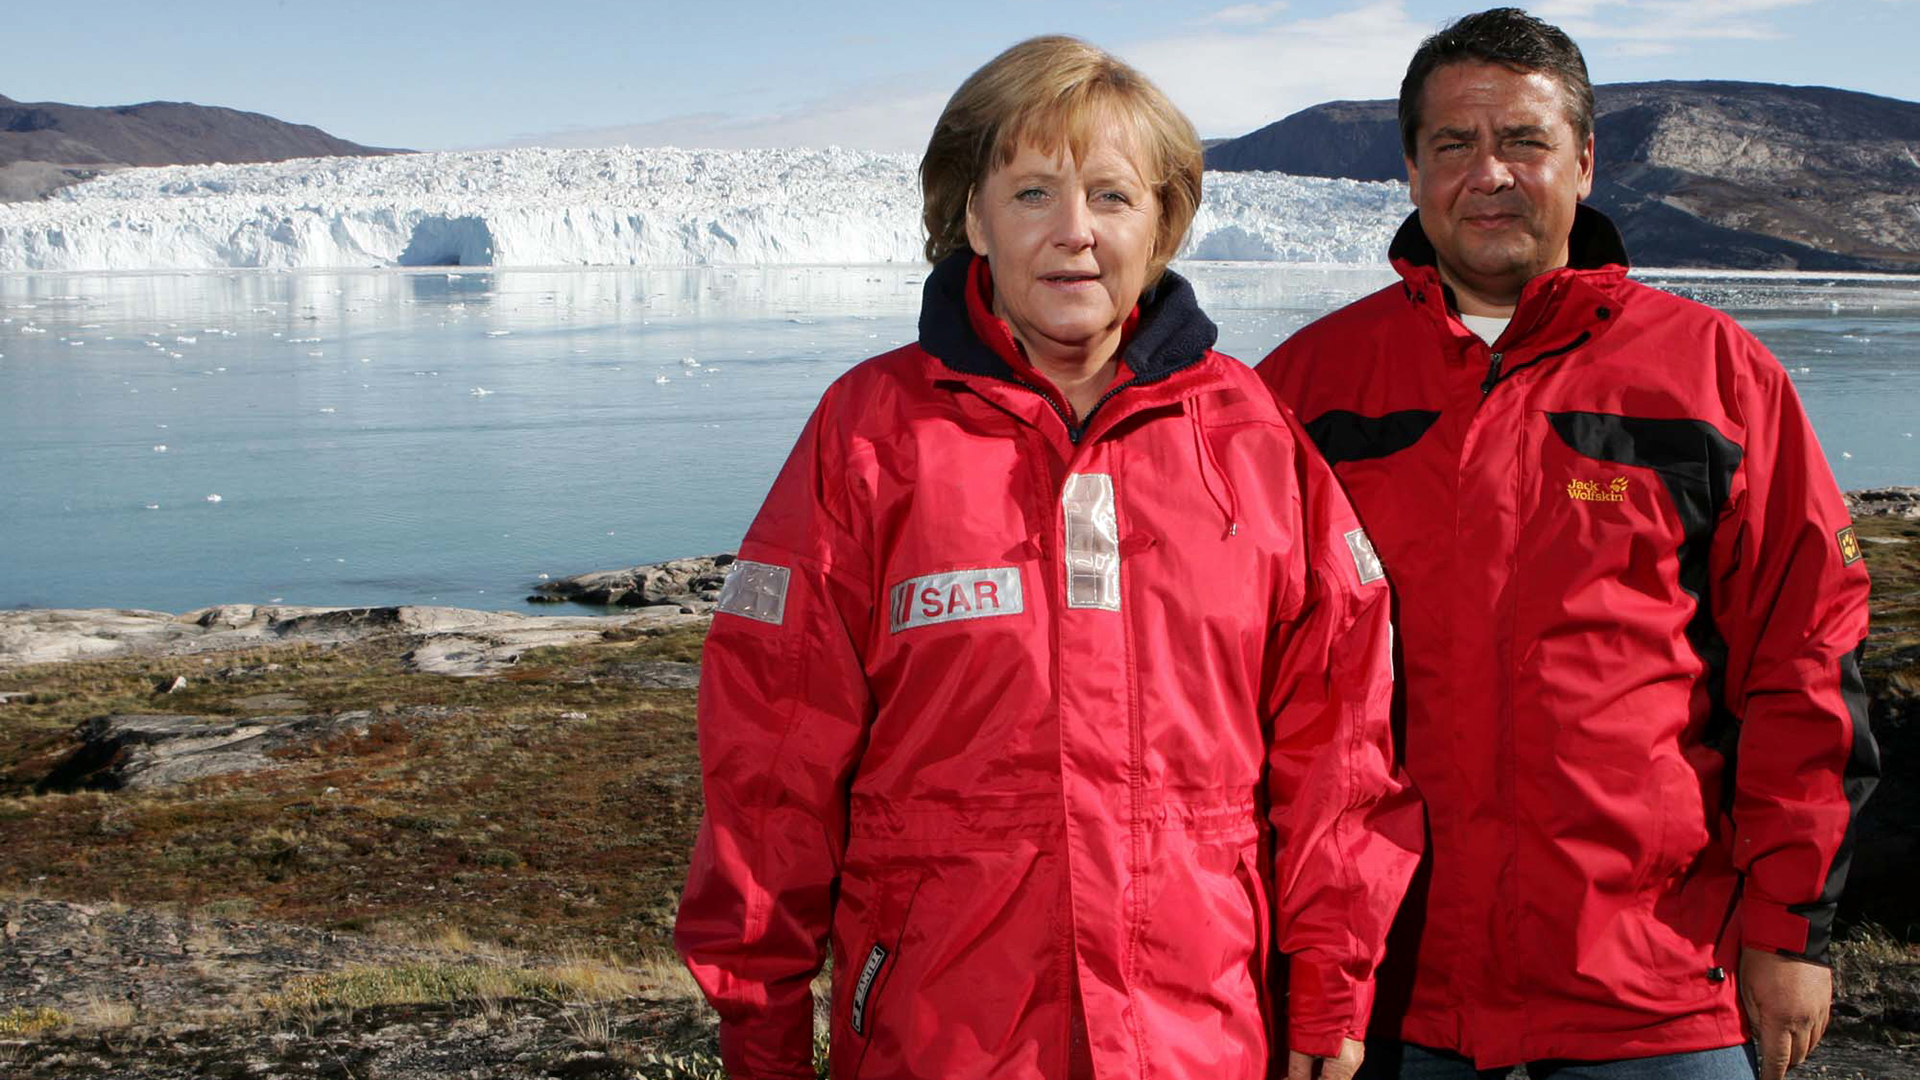 Bundeskanzlerin Angela Merkel und der damalige Bundesumweltminister Sigmar Gabriel, aufgenommen vor dem Eqi Gletscher bei Ilulissat in Grönland. (Archivbild: 17.08.2007) | dpa